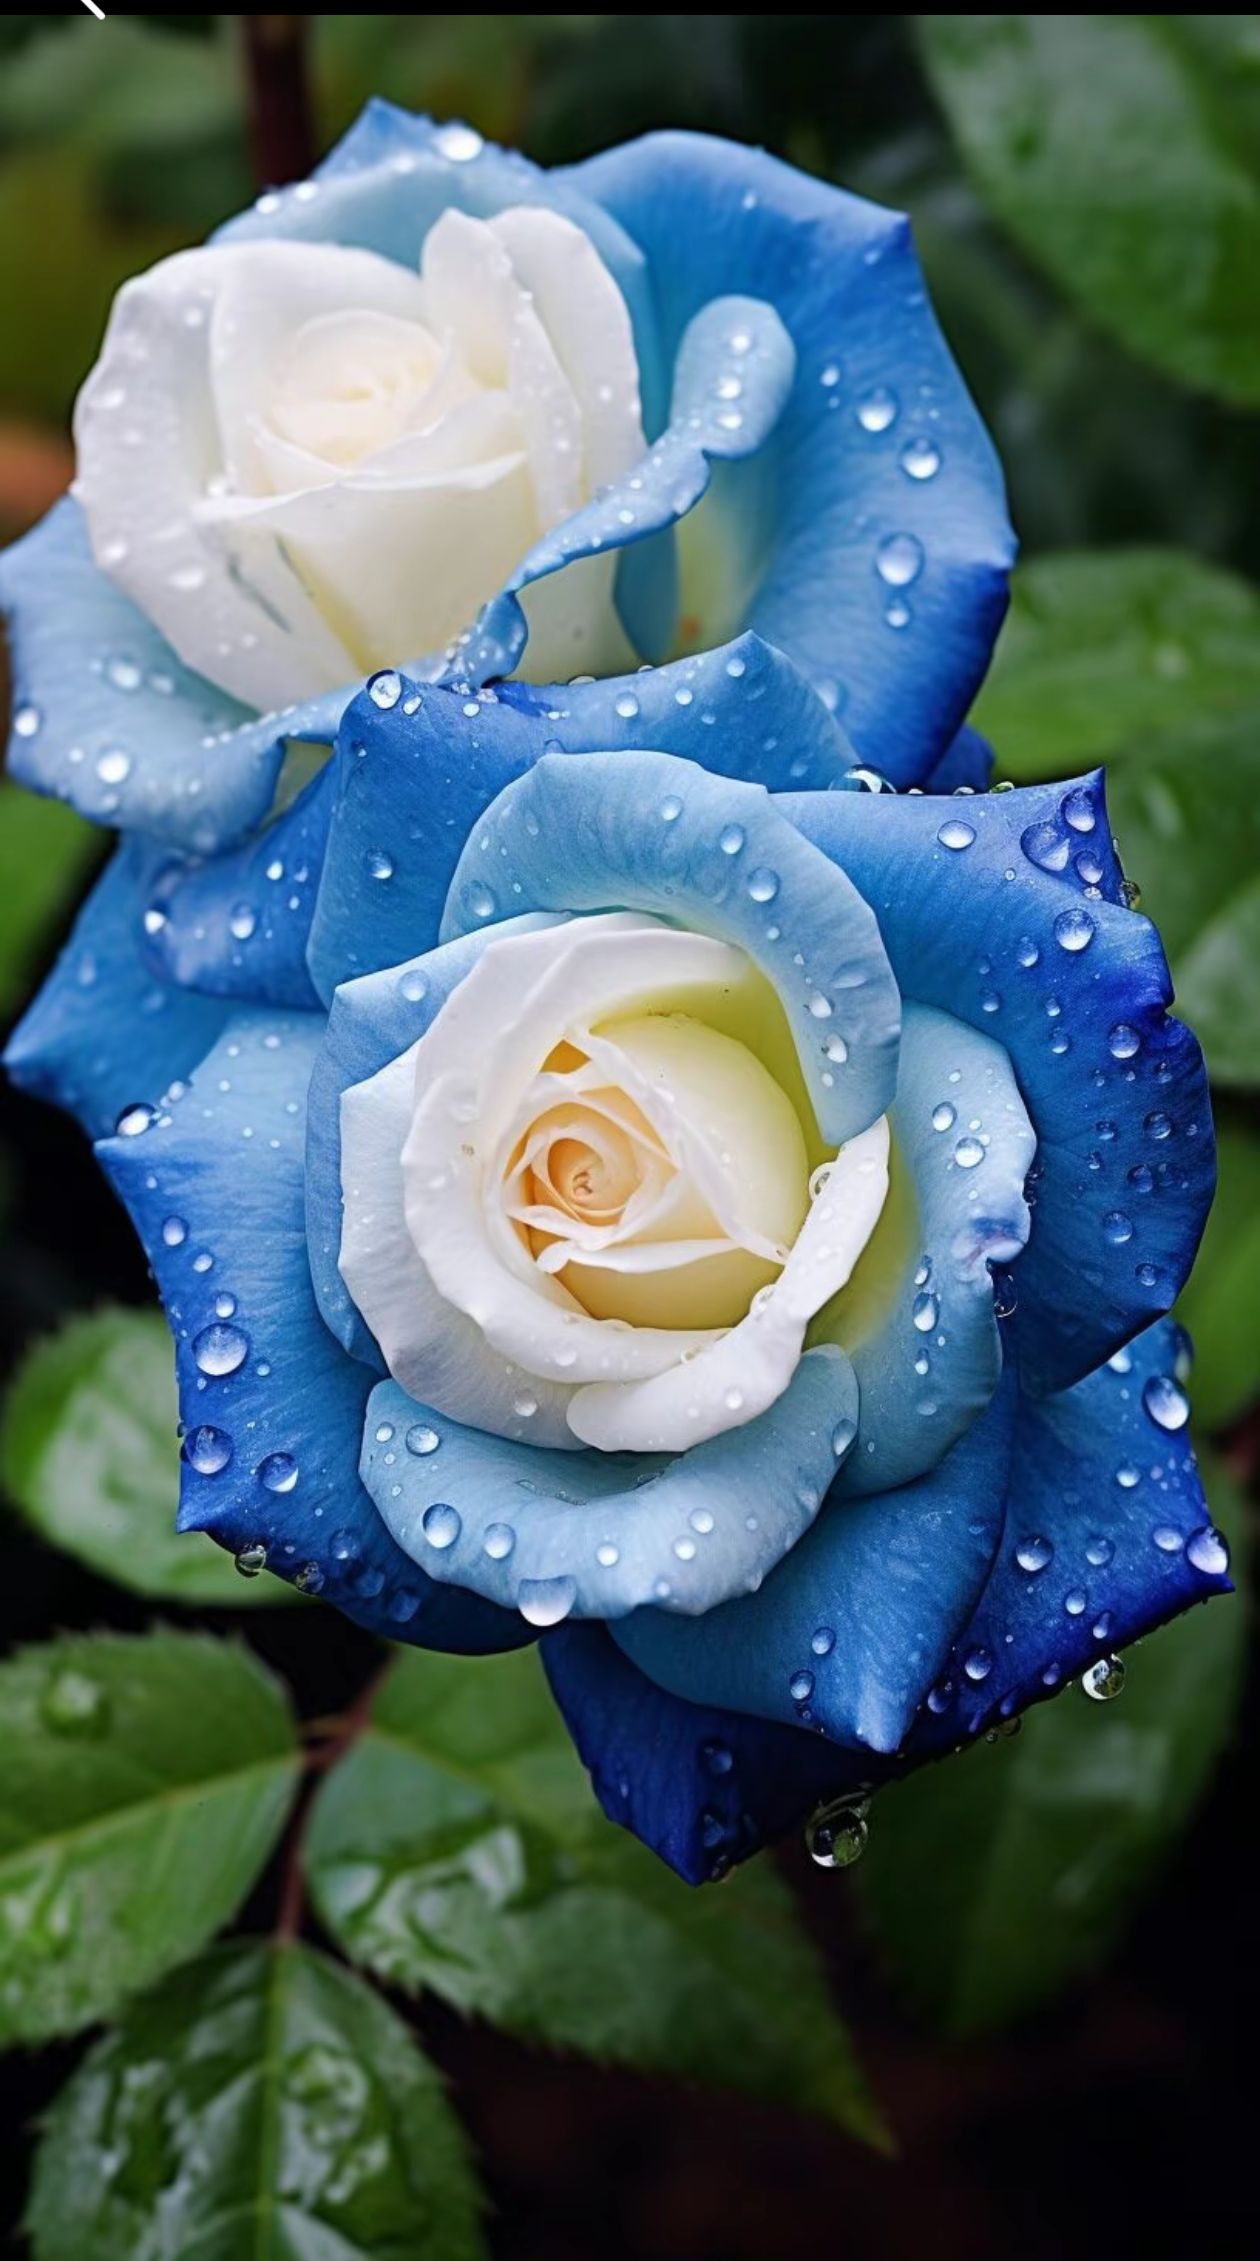 蓝白玫瑰,清新脱俗水珠点缀,更添魅力愿你如花般绽放,美丽动人!